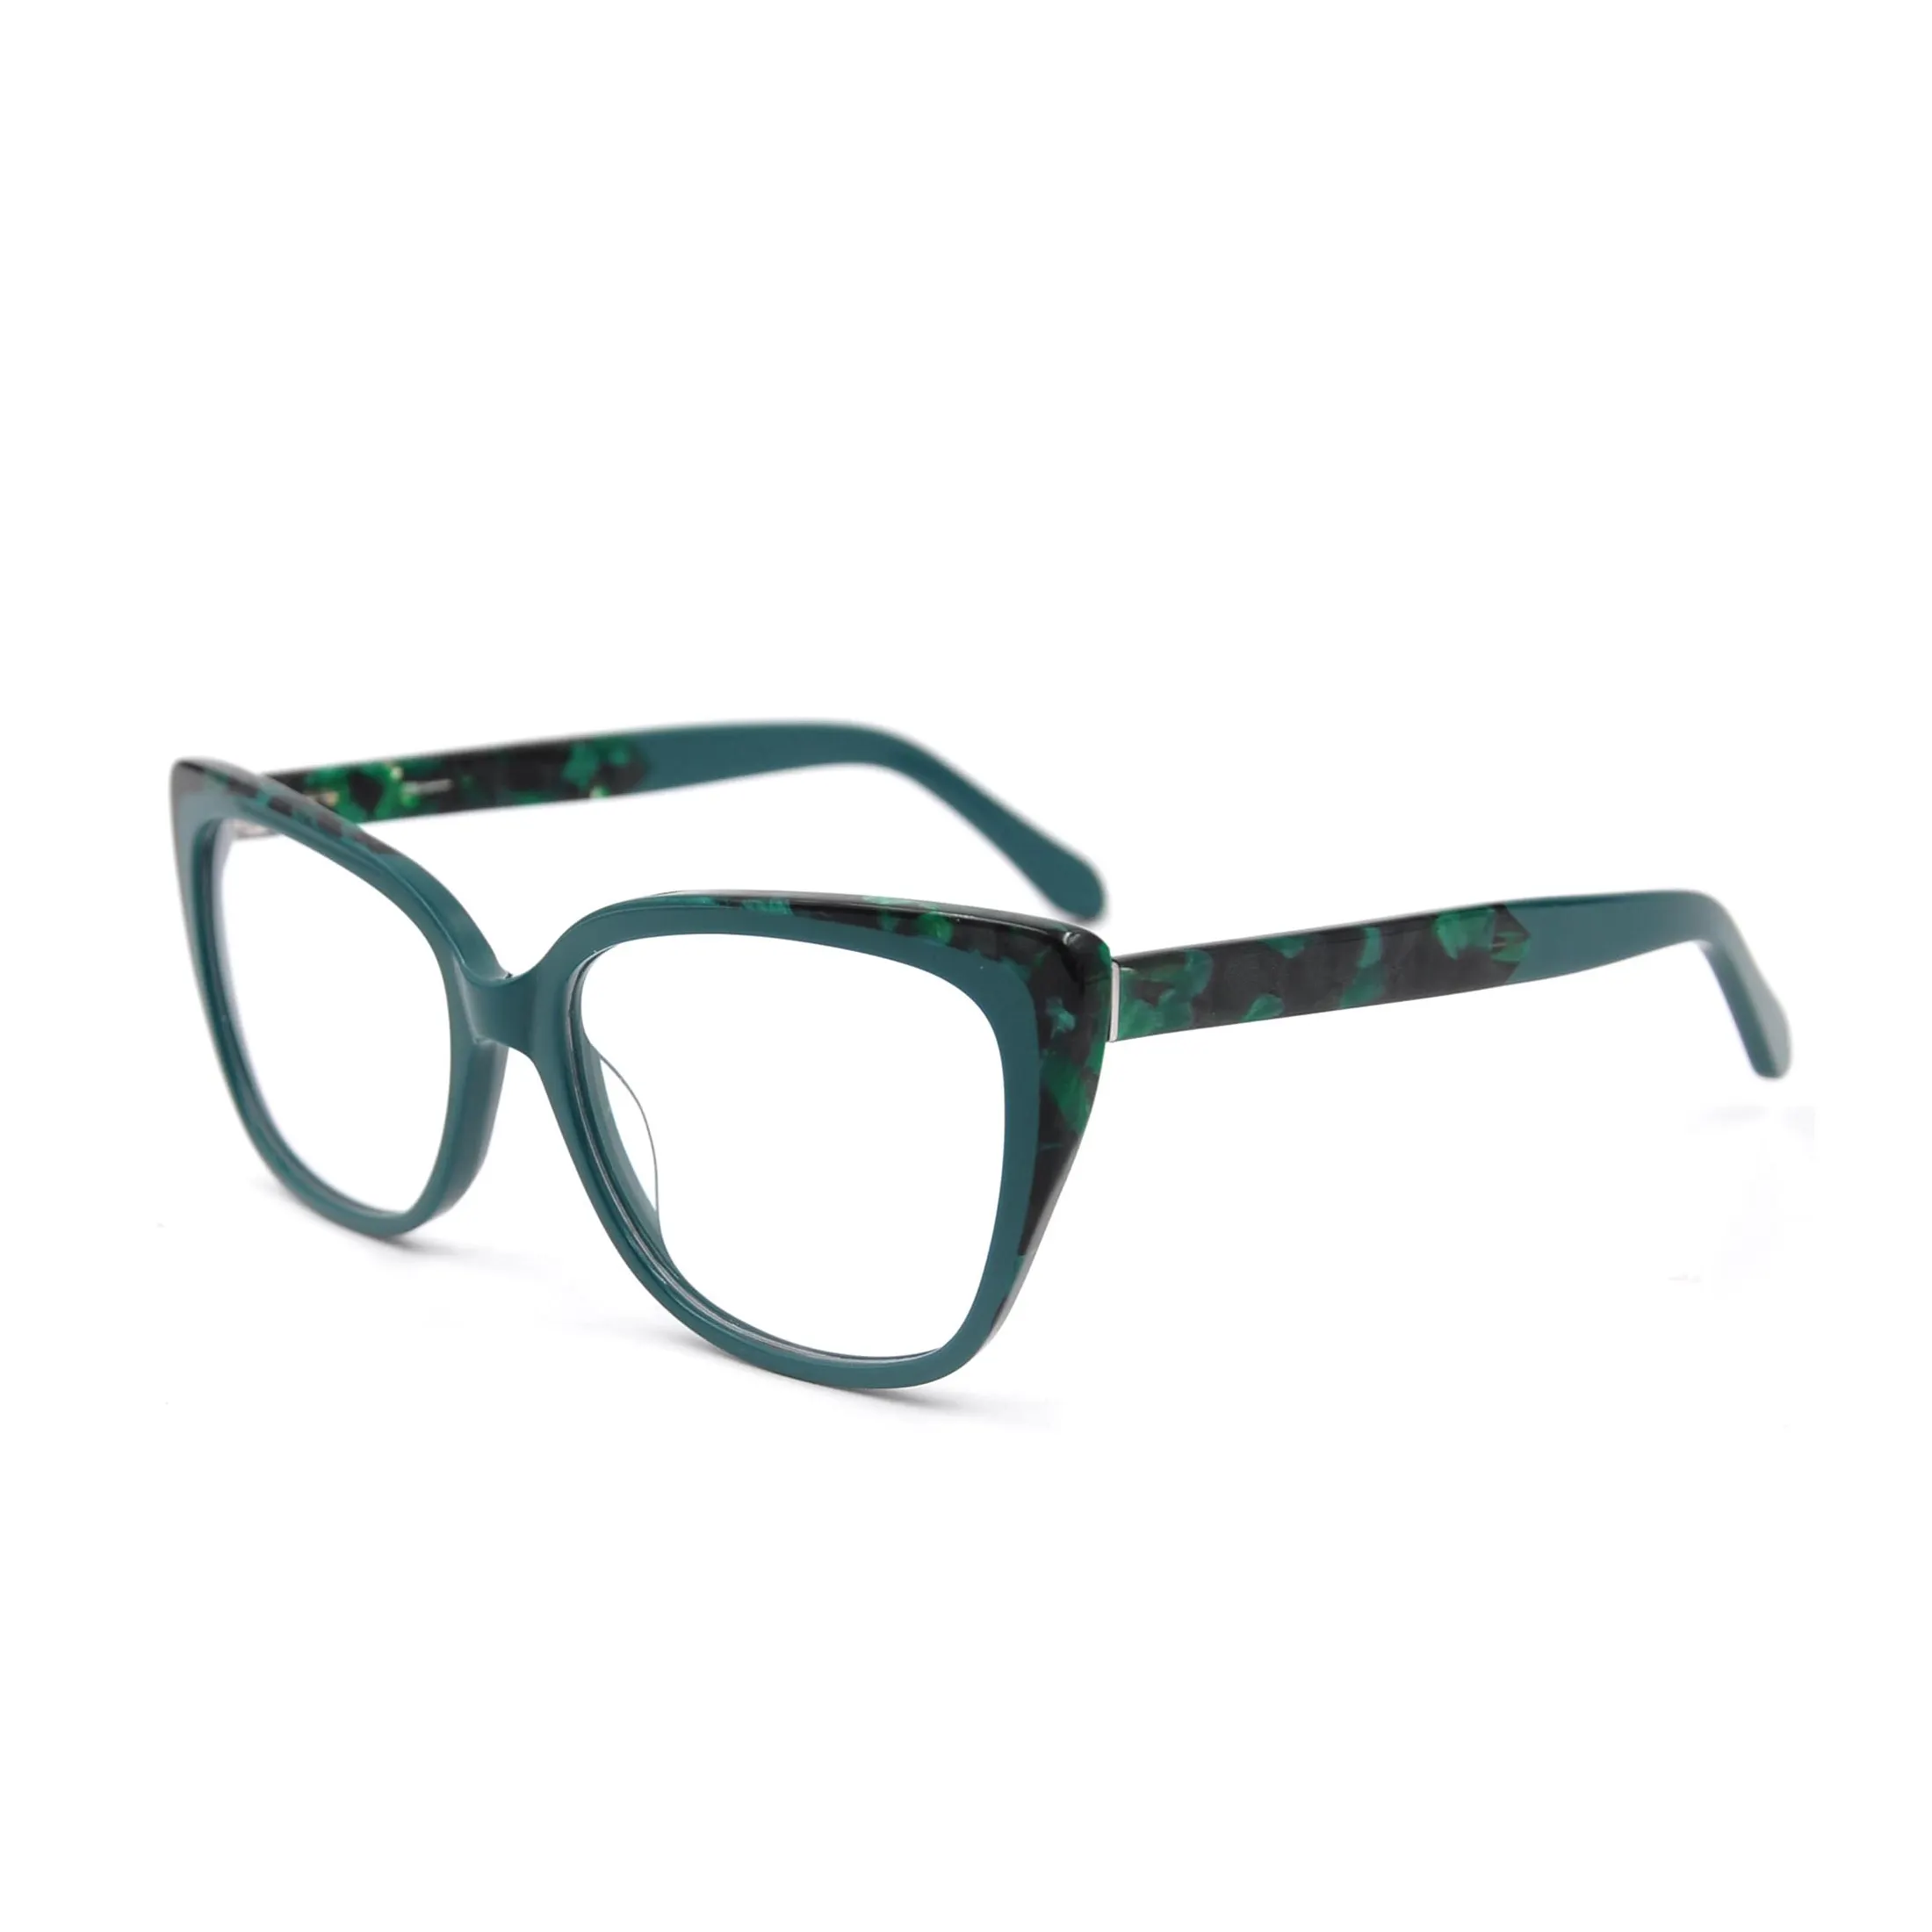 แฟชั่นแว่นตาใหม่ล่าสุด 2020 CAT EYE กรอบ tortoiseshell acetate แว่นตากรอบ